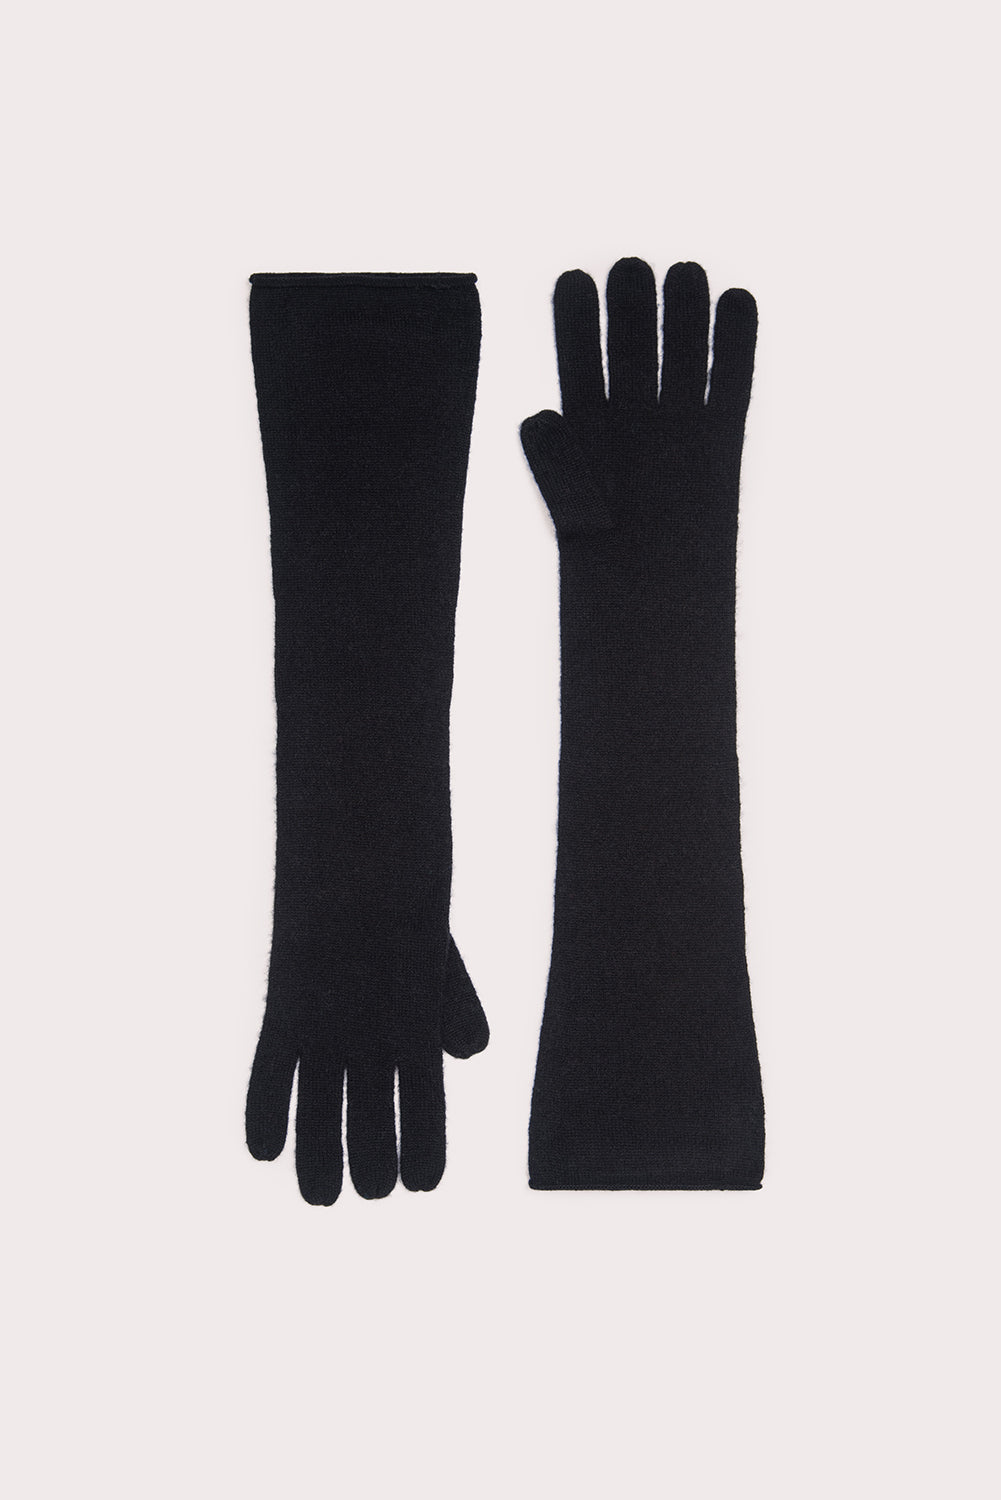 Linz Gloves Black Cashmere